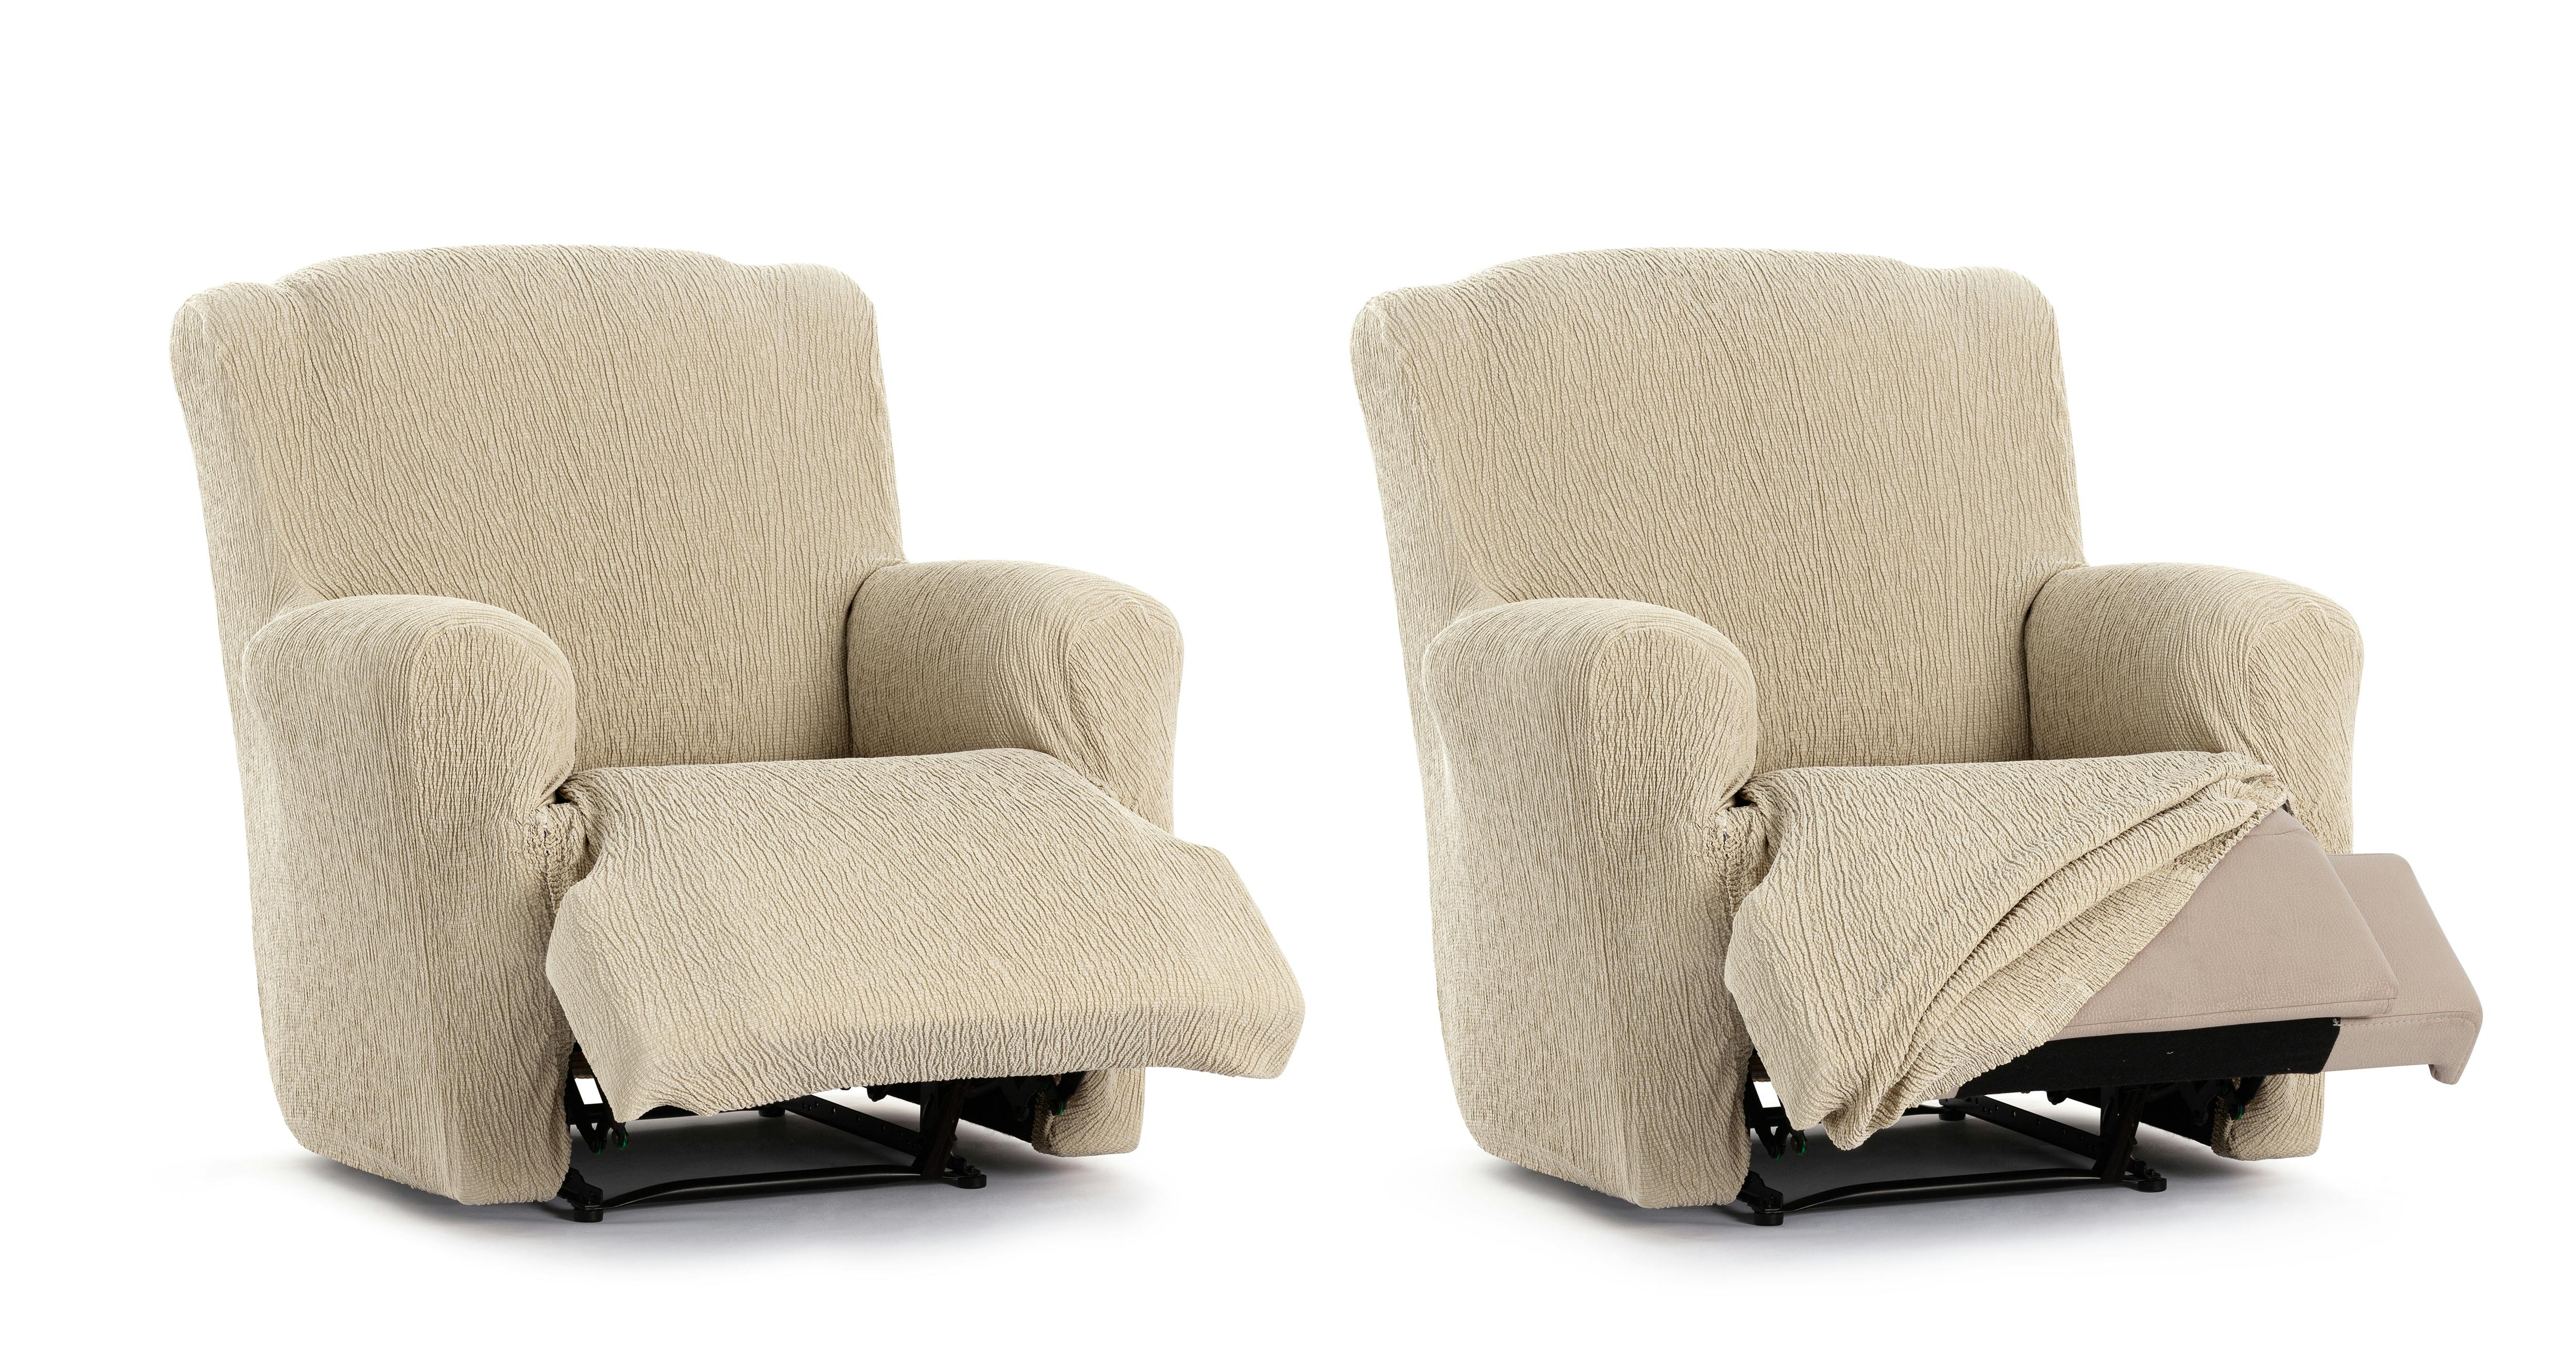 Fundas de sillón relax: Protege y renueva tu mueble